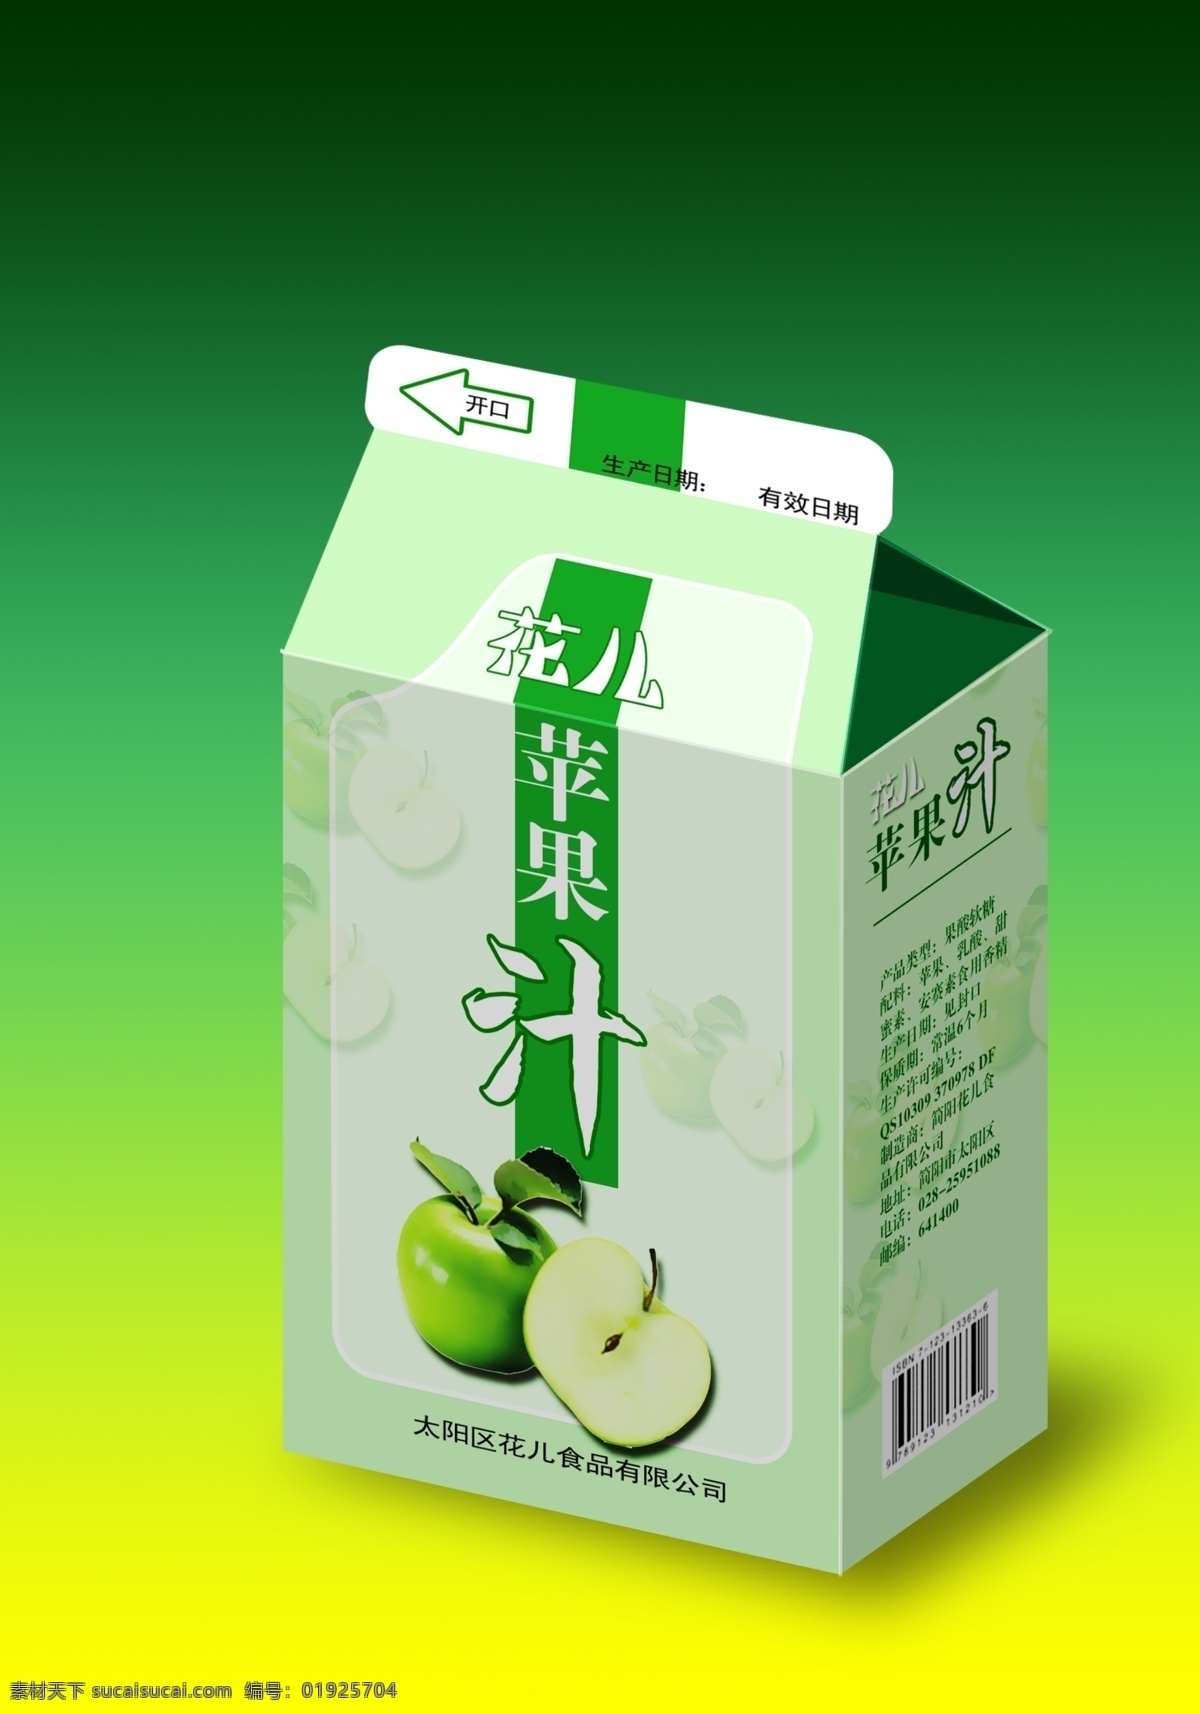 苹果汁 包装 盒子 苹果 广告 包装设计 绿色